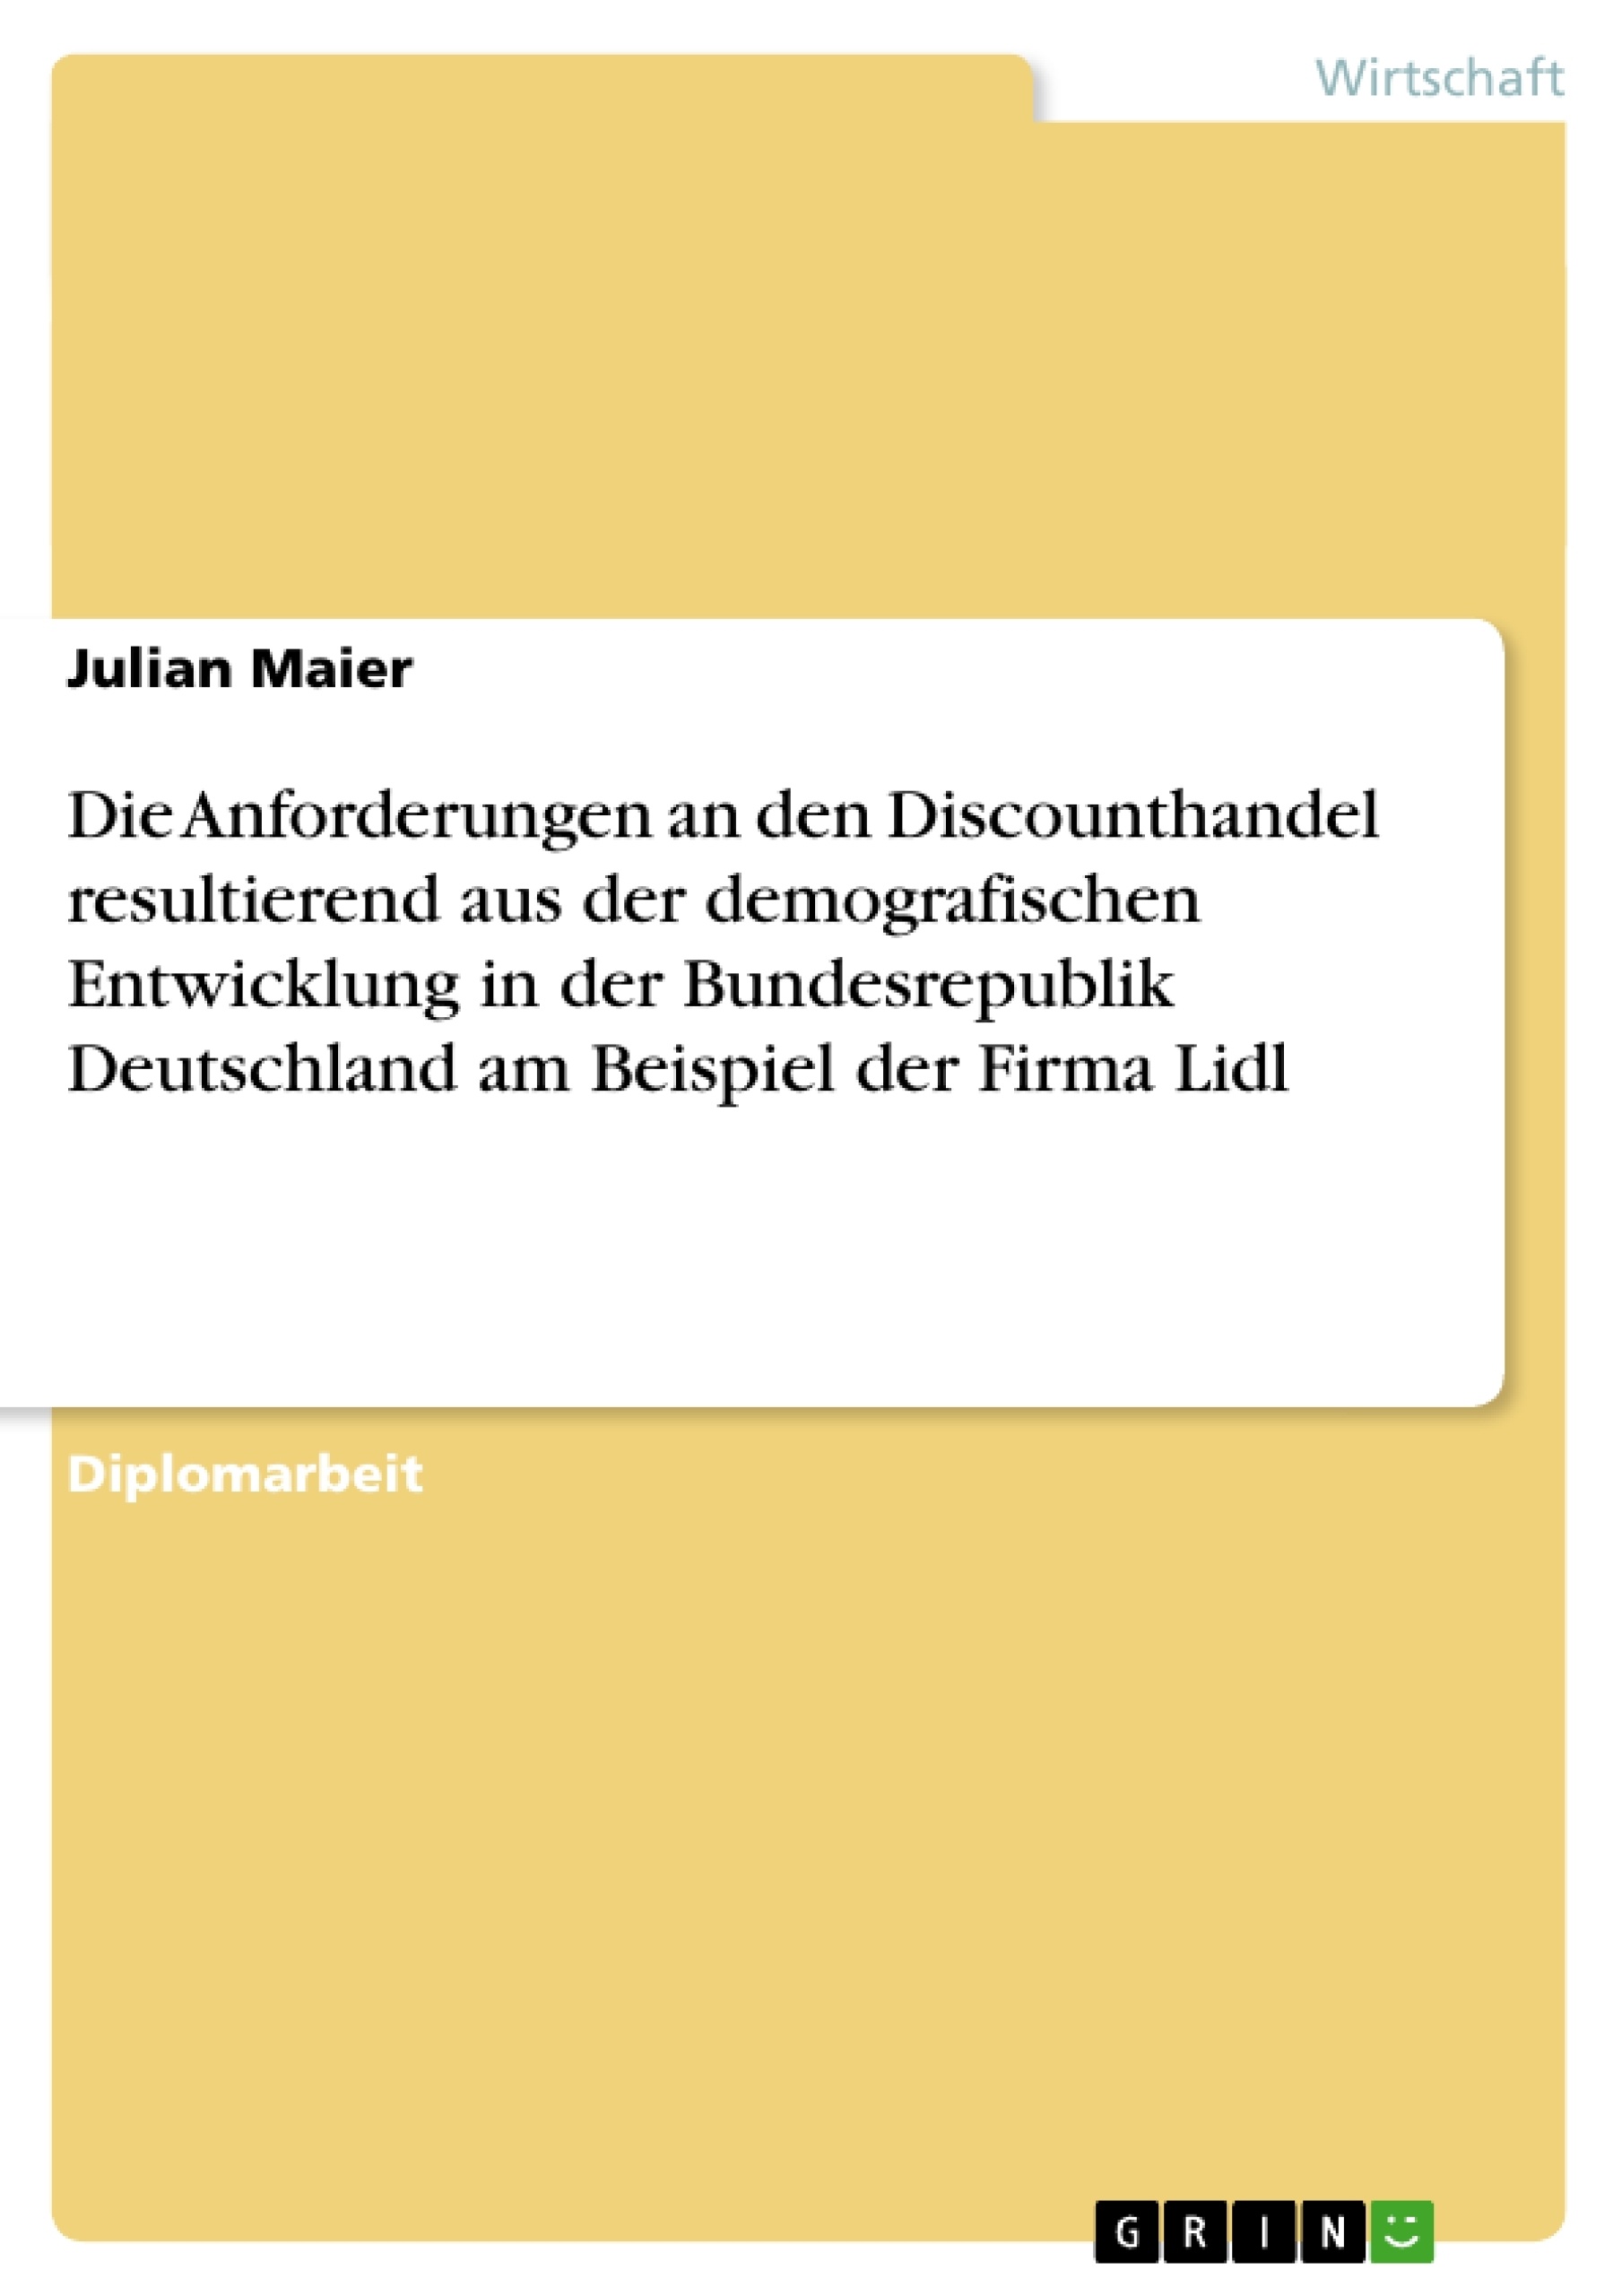 Title: Die Anforderungen an den Discounthandel resultierend aus der demografischen Entwicklung in der Bundesrepublik Deutschland. Die Firma Lidl